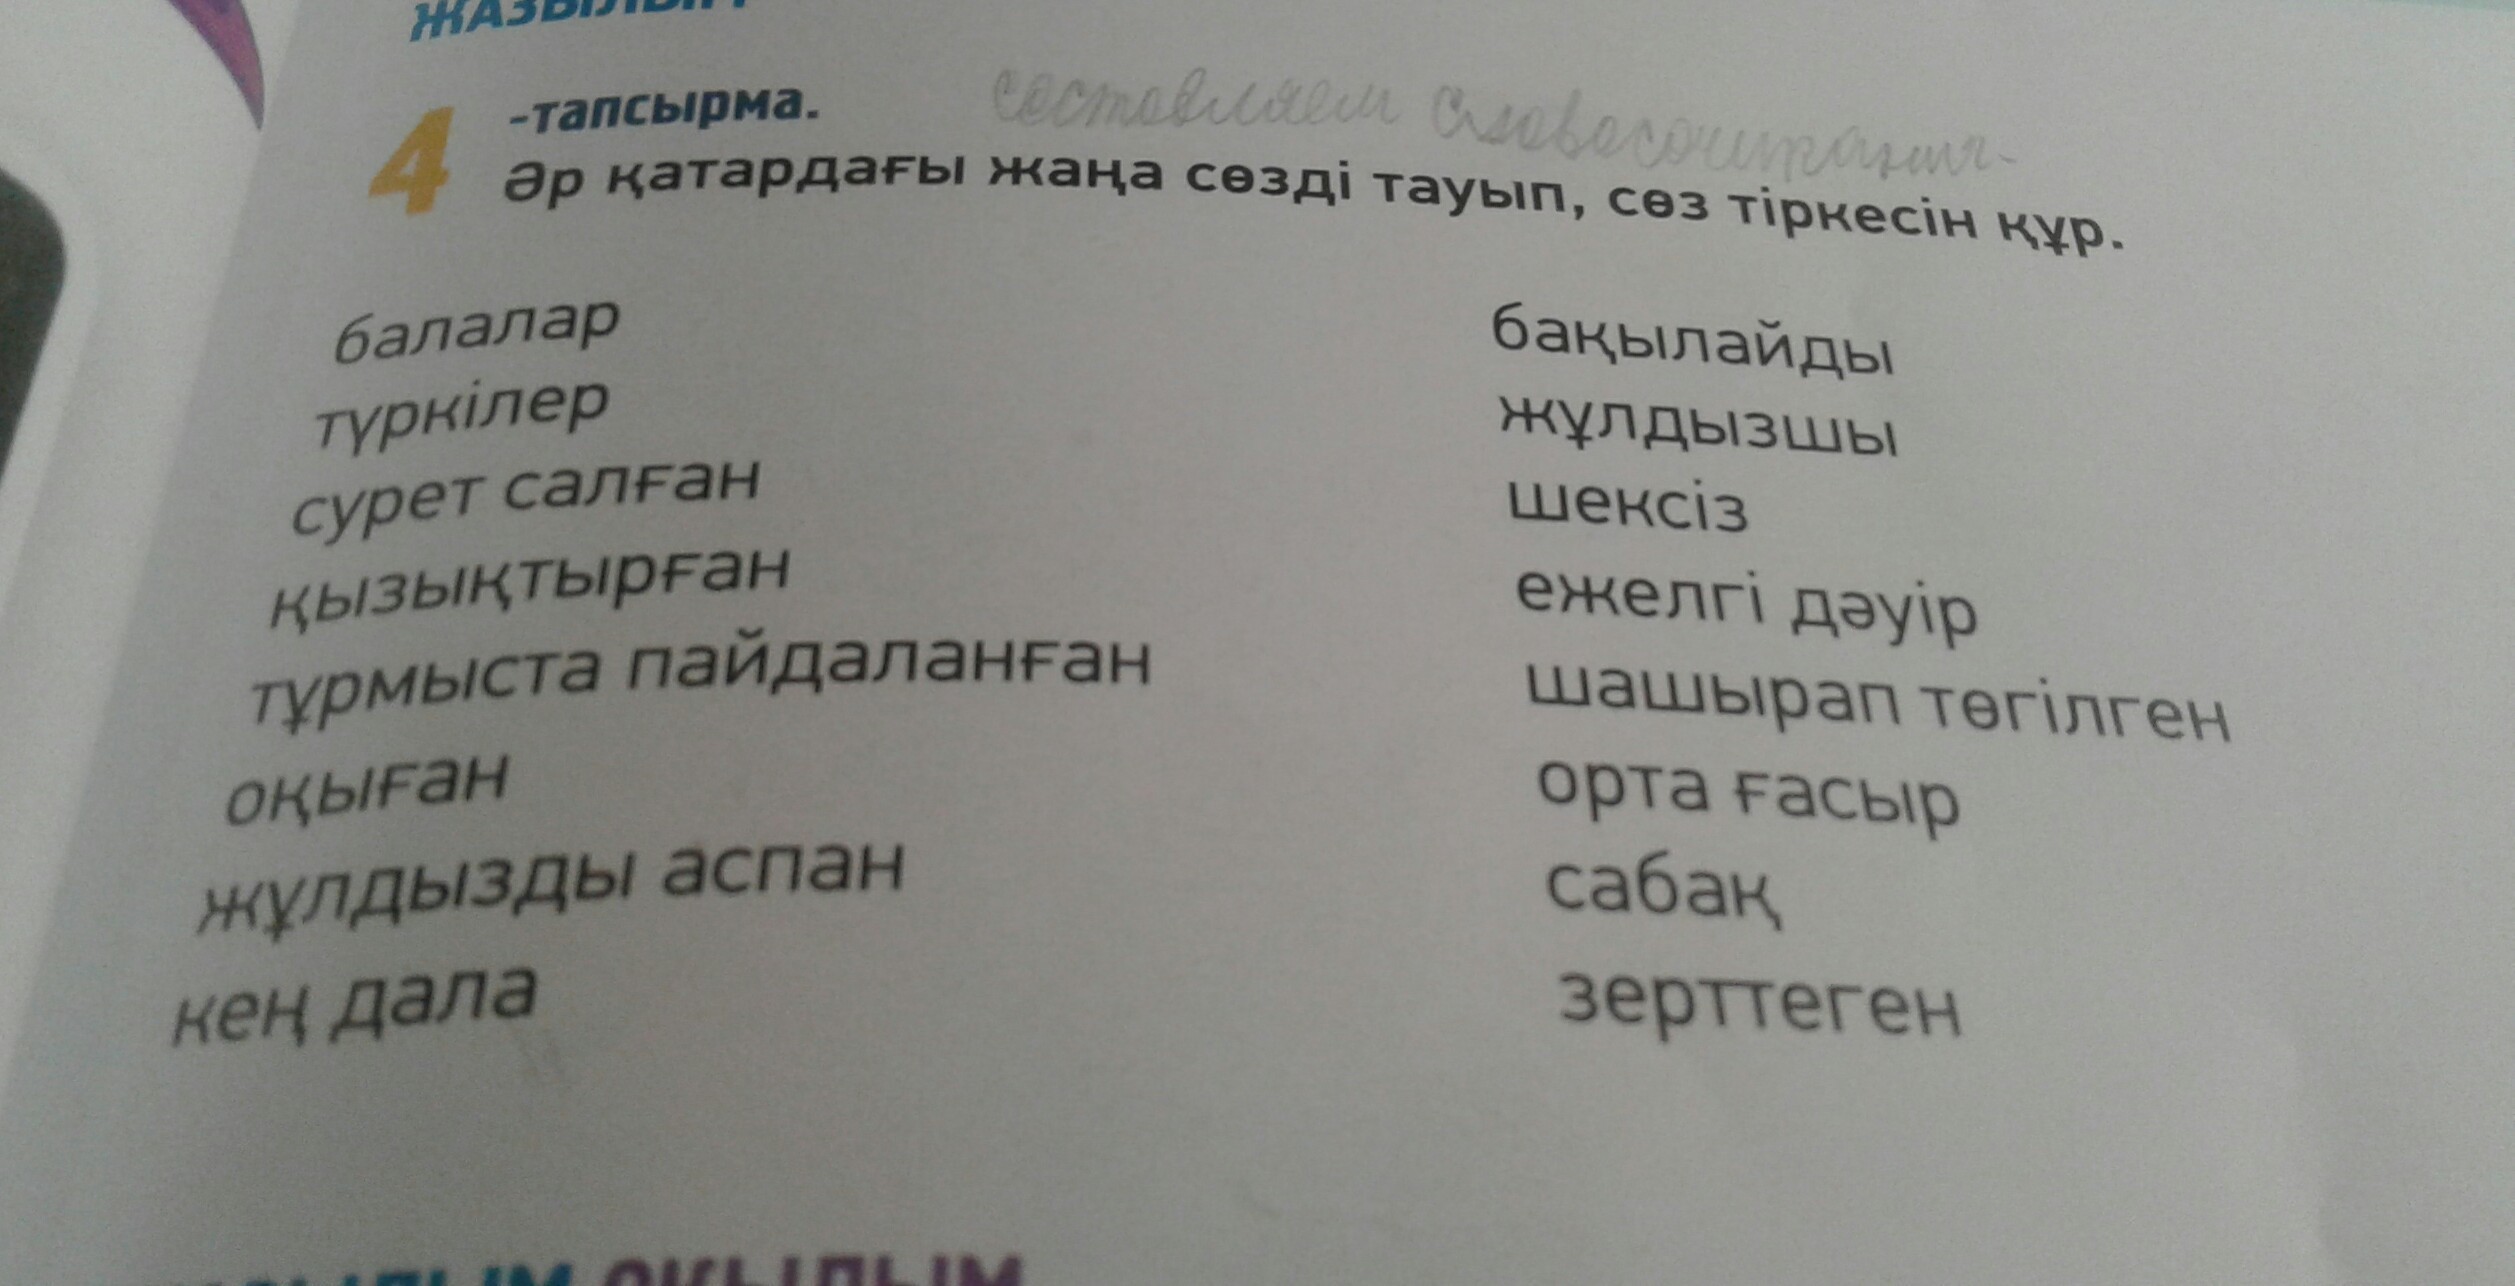 члены перевод на казахский язык фото 87